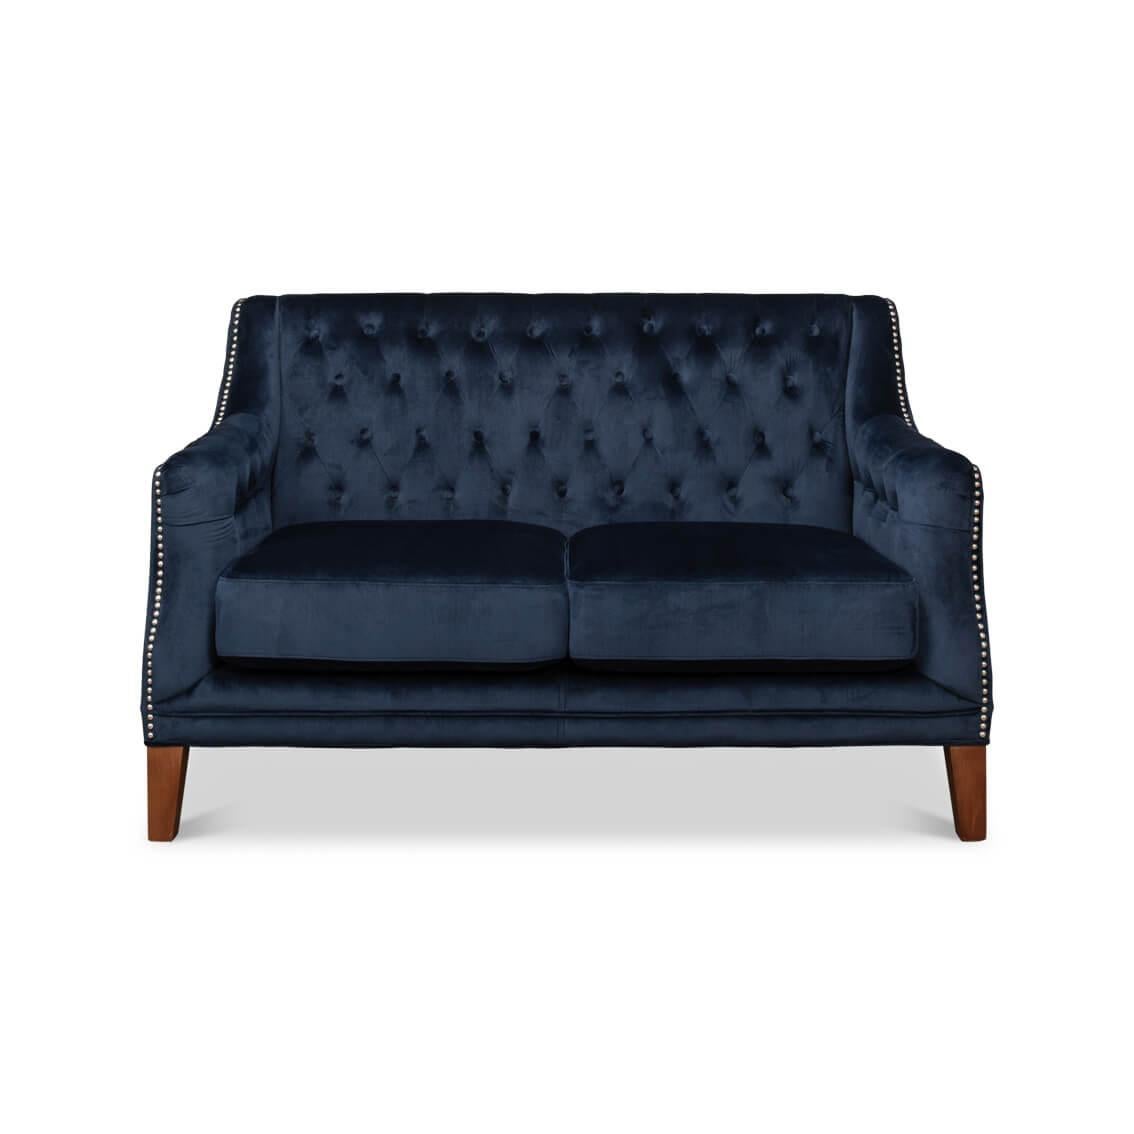 Dieses mit prächtigem marineblauem Samt bezogene Sofa verfügt über eine klassische, tiefe Knopfheftung, die ein raffiniertes Rautenmuster erzeugt.

Die anmutigen Kurven seiner Silhouette werden durch eine geschmackvolle Nagelkopfverzierung